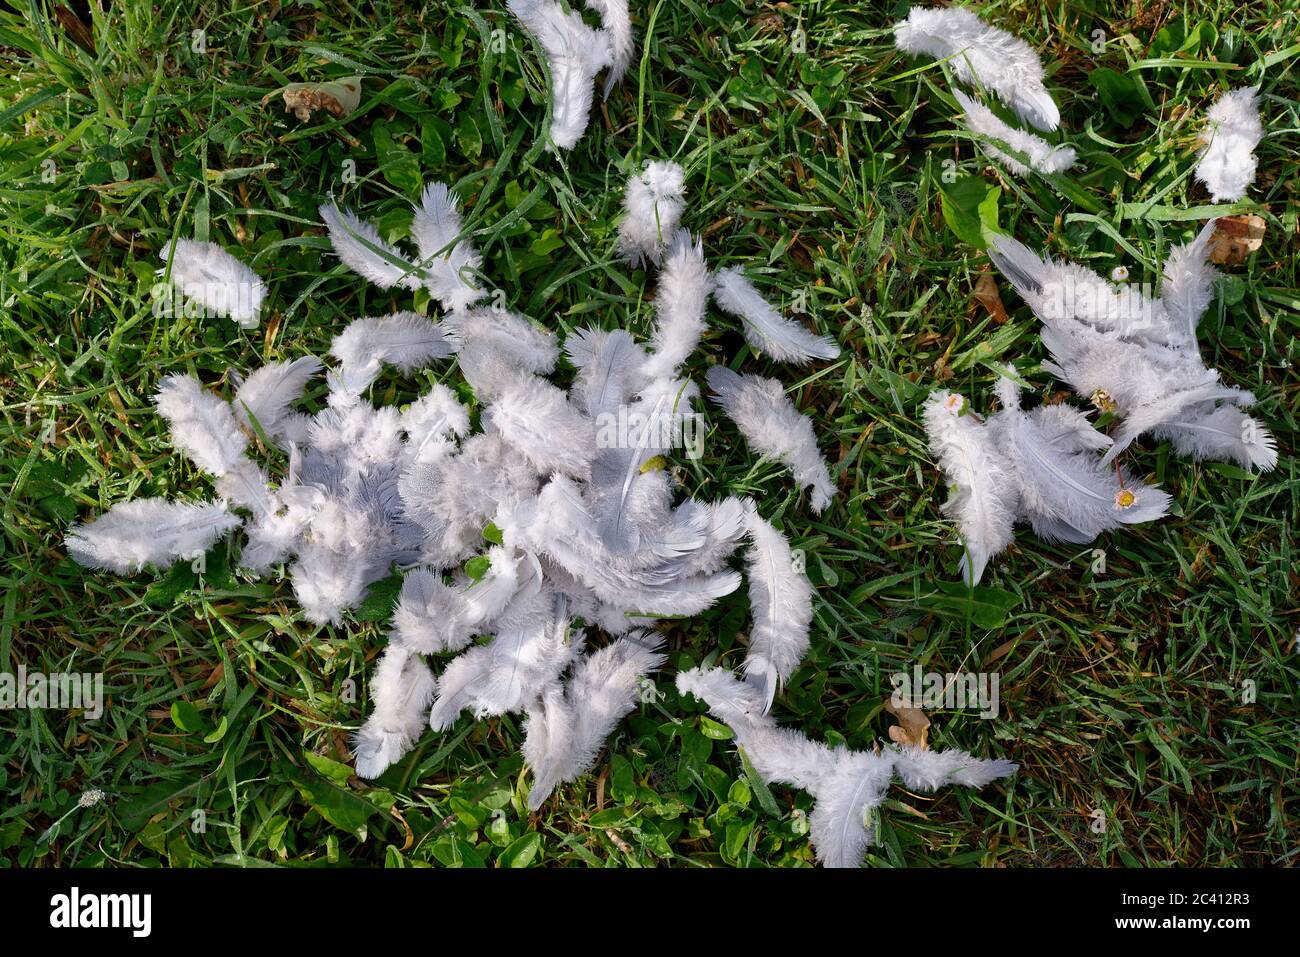 Ein Durcheinander von jungen Vogelfedern (Taube) auf dem Gras nach einem Angriff durch ein Raubtier. Der Vogel entkam und überlebte, verlor aber diese Federn als Folge. Stockfoto